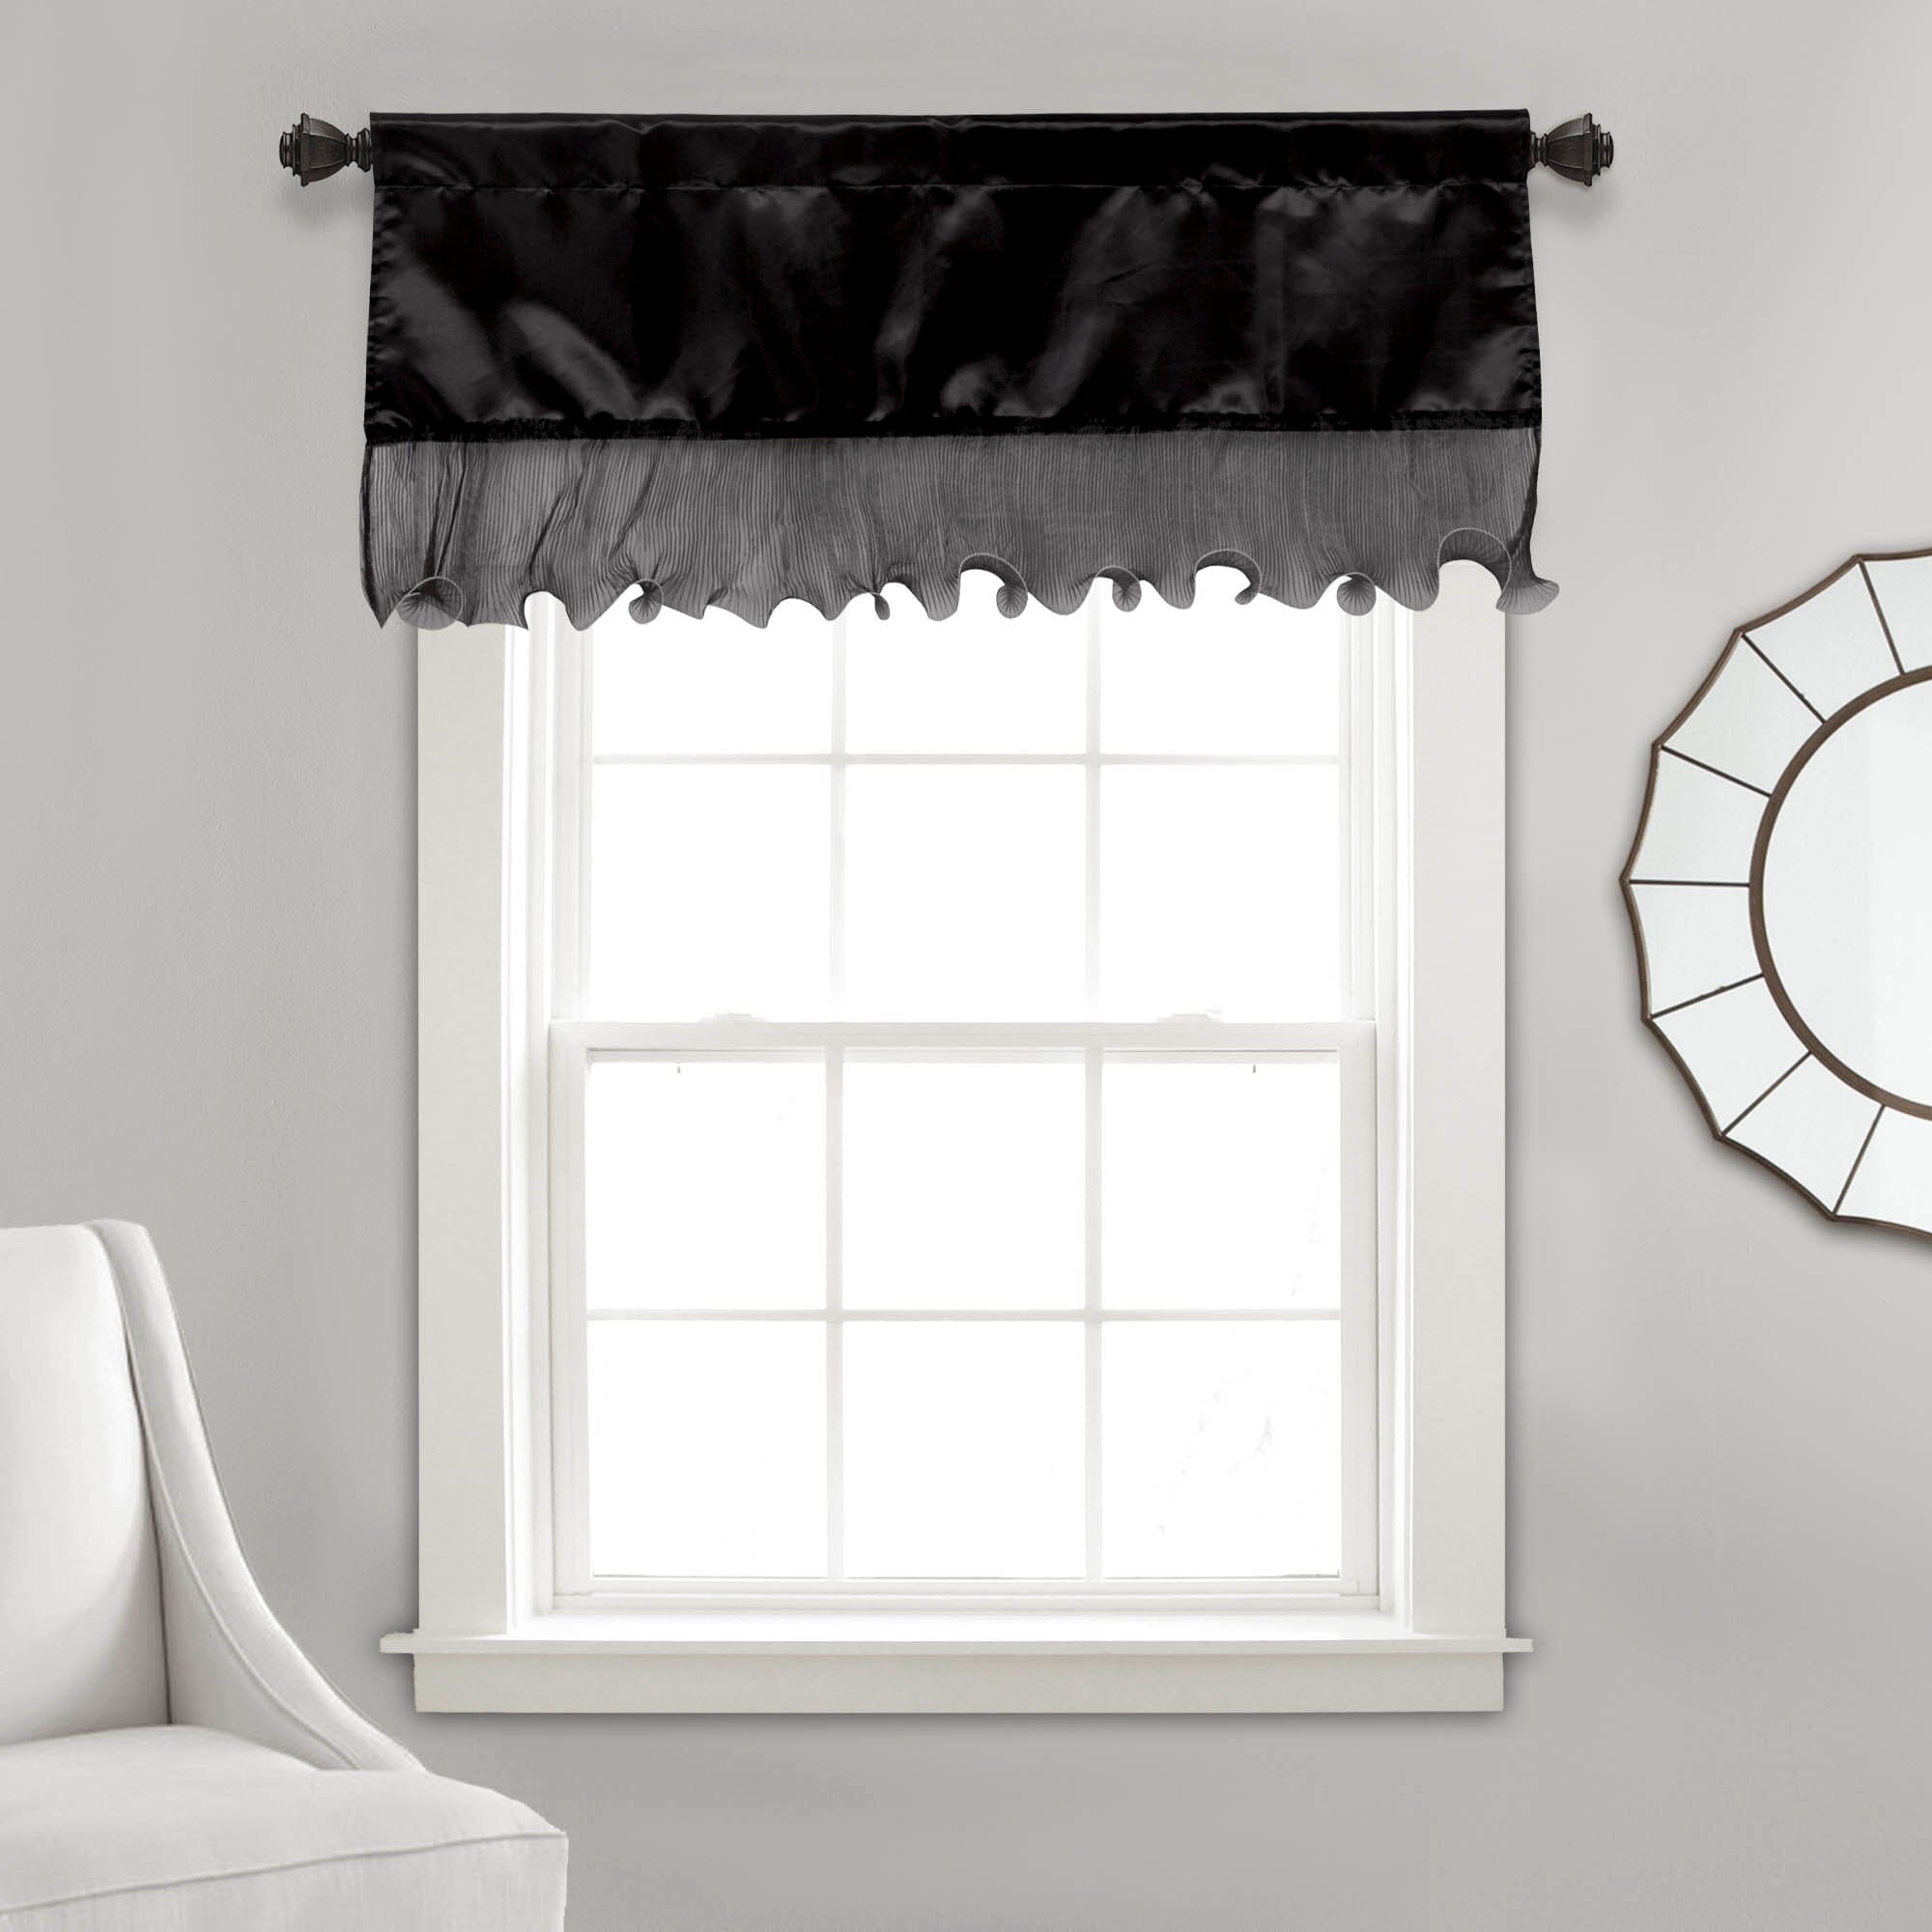 Tache Satin Ruffle Window Curtain Tailored Black 18x52" Valance (1622) - Tache Home Fashion